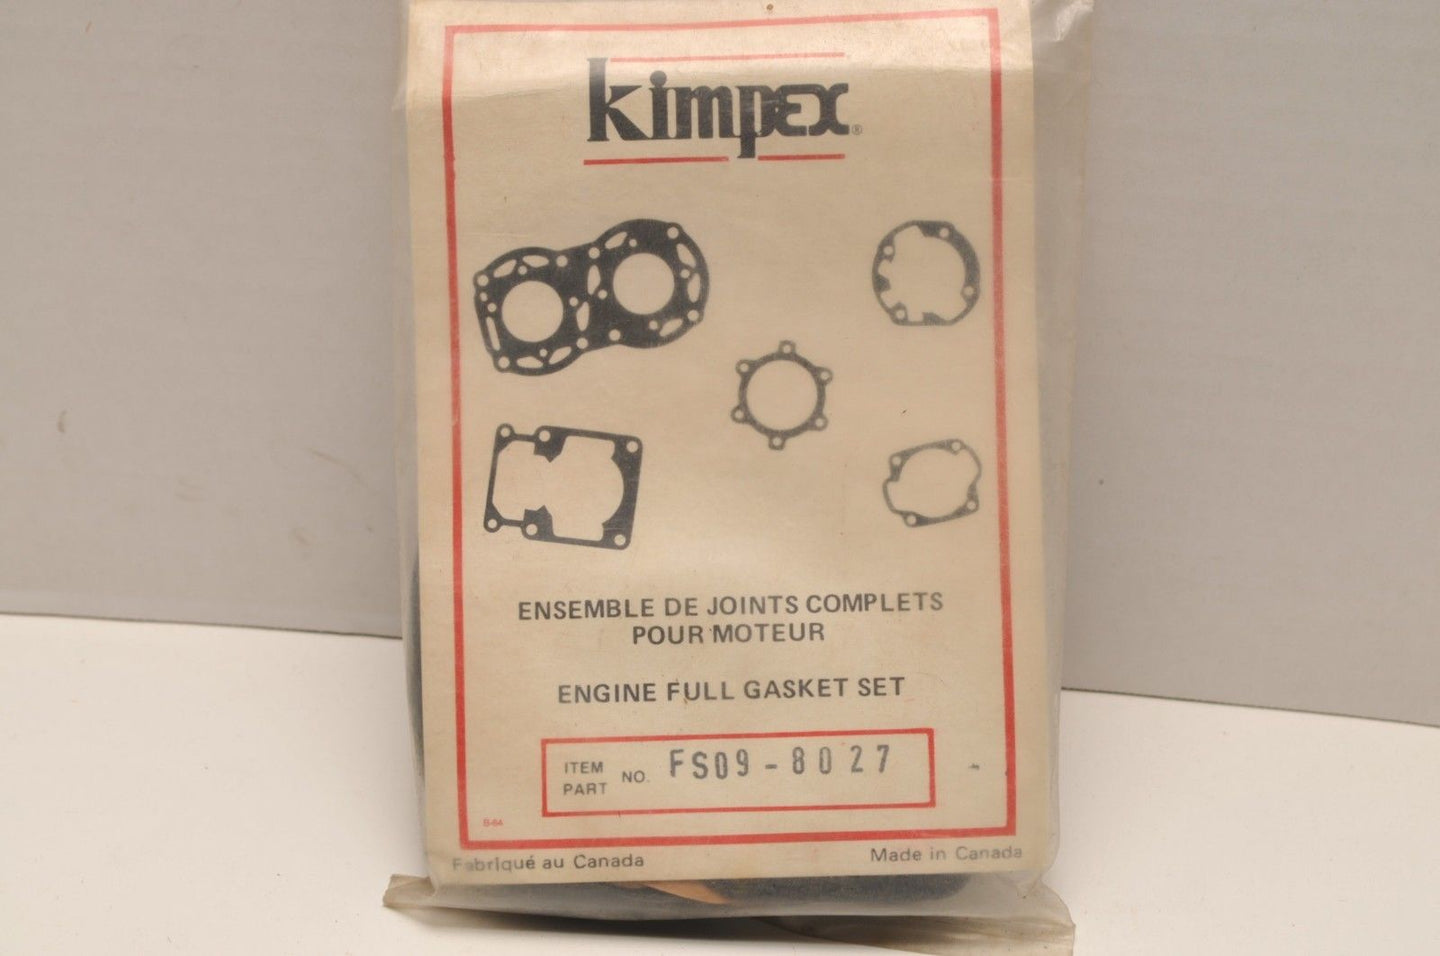 NOS Kimpex Full Gasket Set R18-8027 FS09-8027 711027 MotoSki Futura 400 1978-80